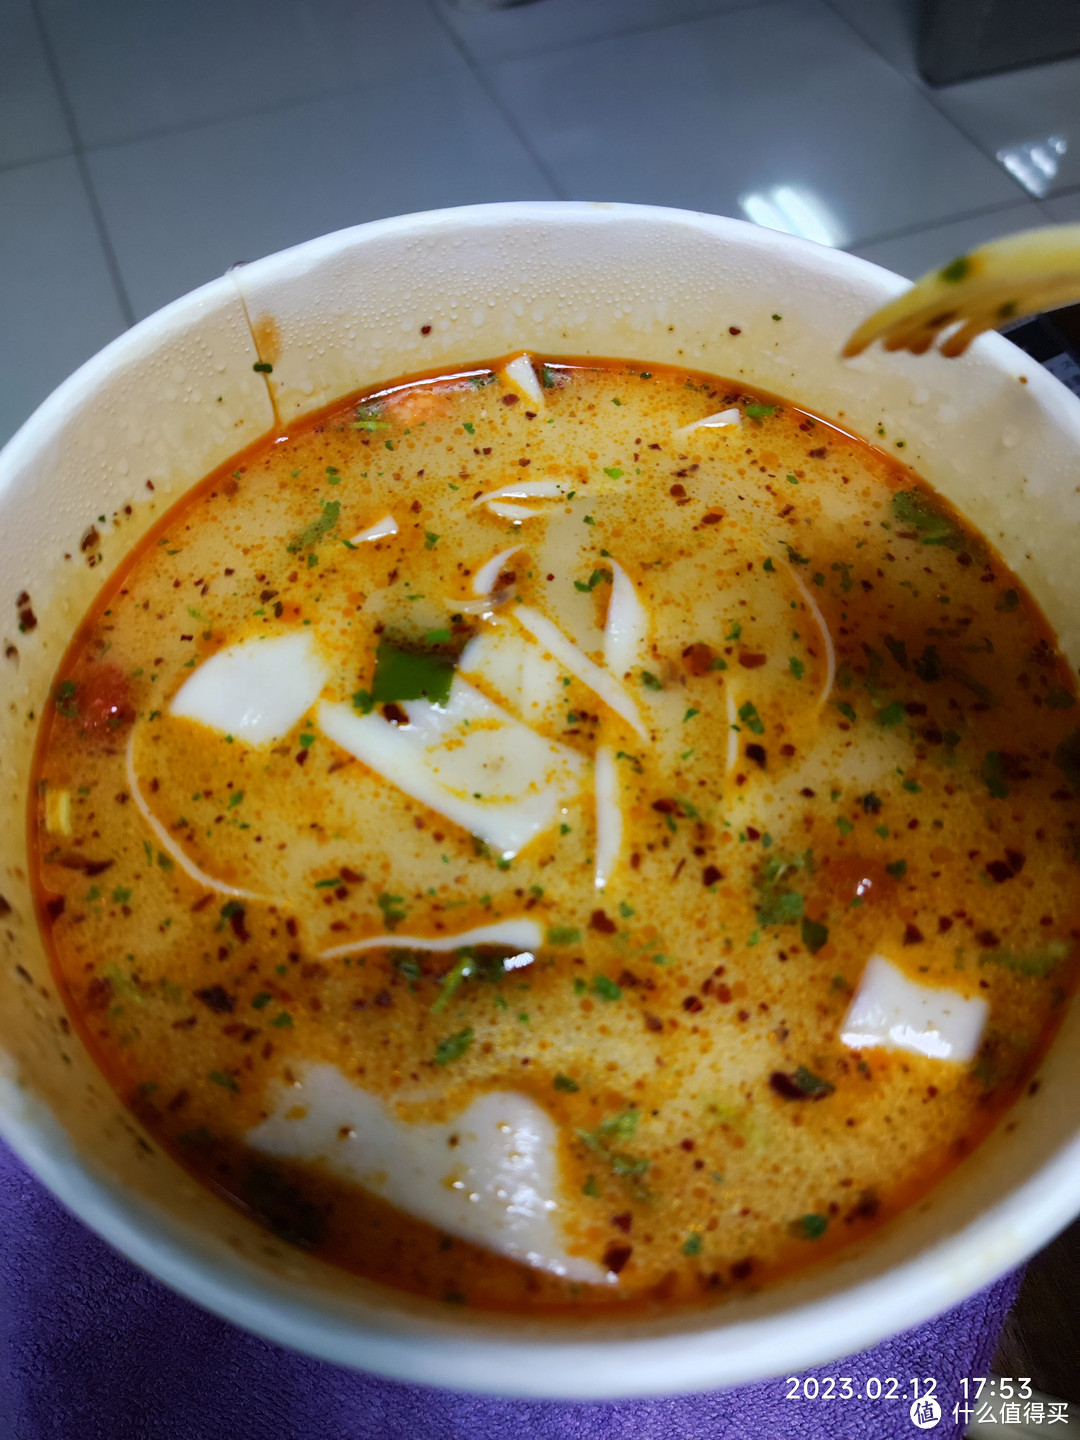 郑州这边老式烩面的汤就是这种色，不是纯白色汤